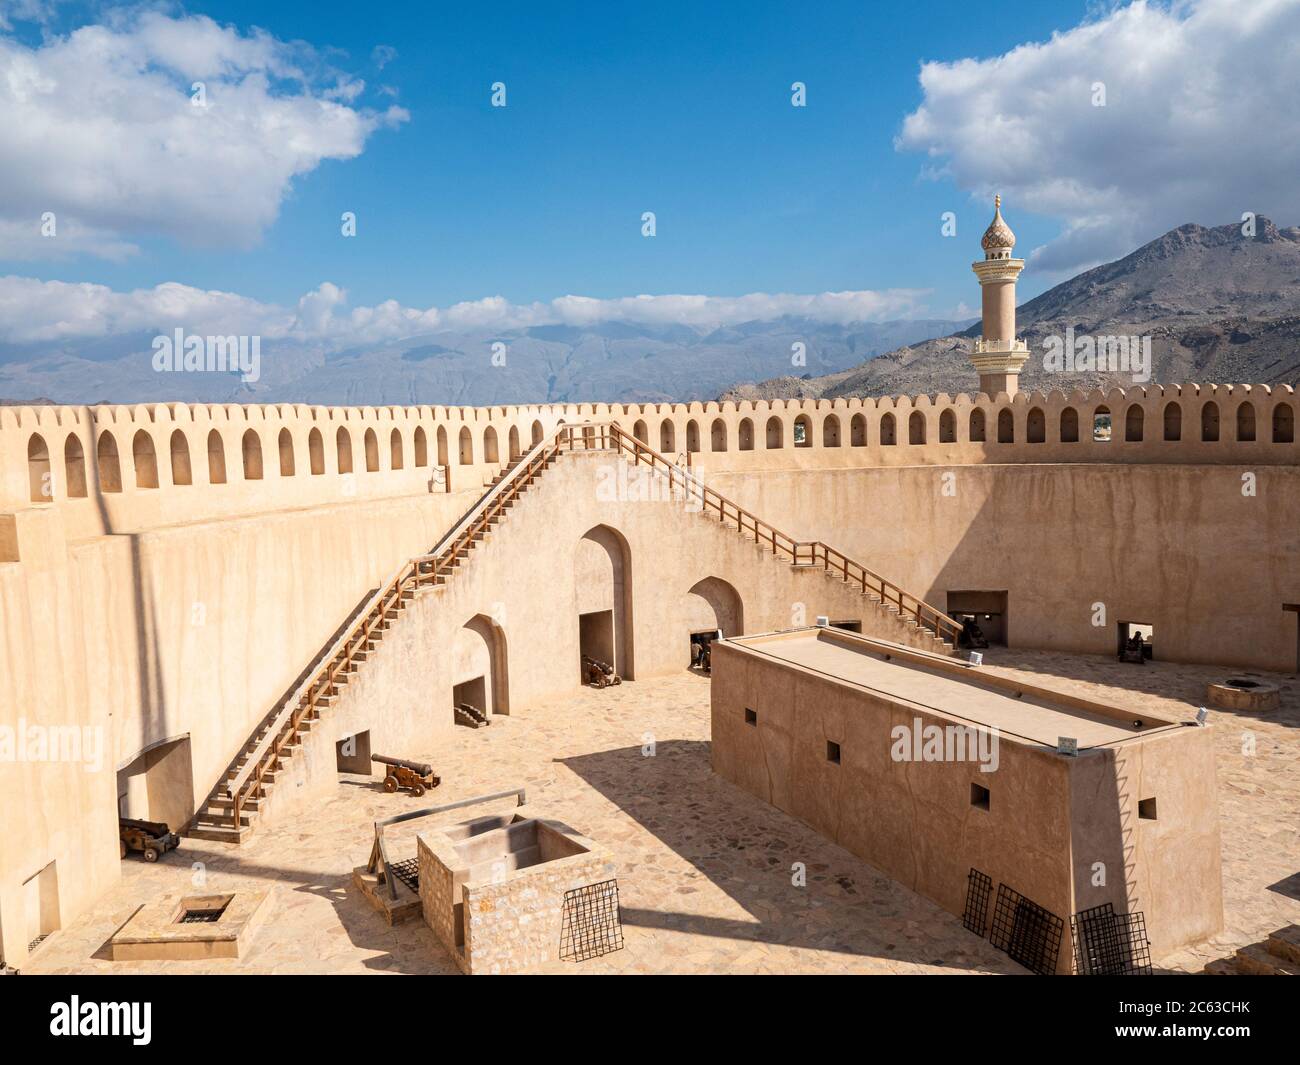 Le fort de Nizwa, la mosquée du Sultan Qaboos au loin, Nizwa, Sultanat d'Oman. Banque D'Images